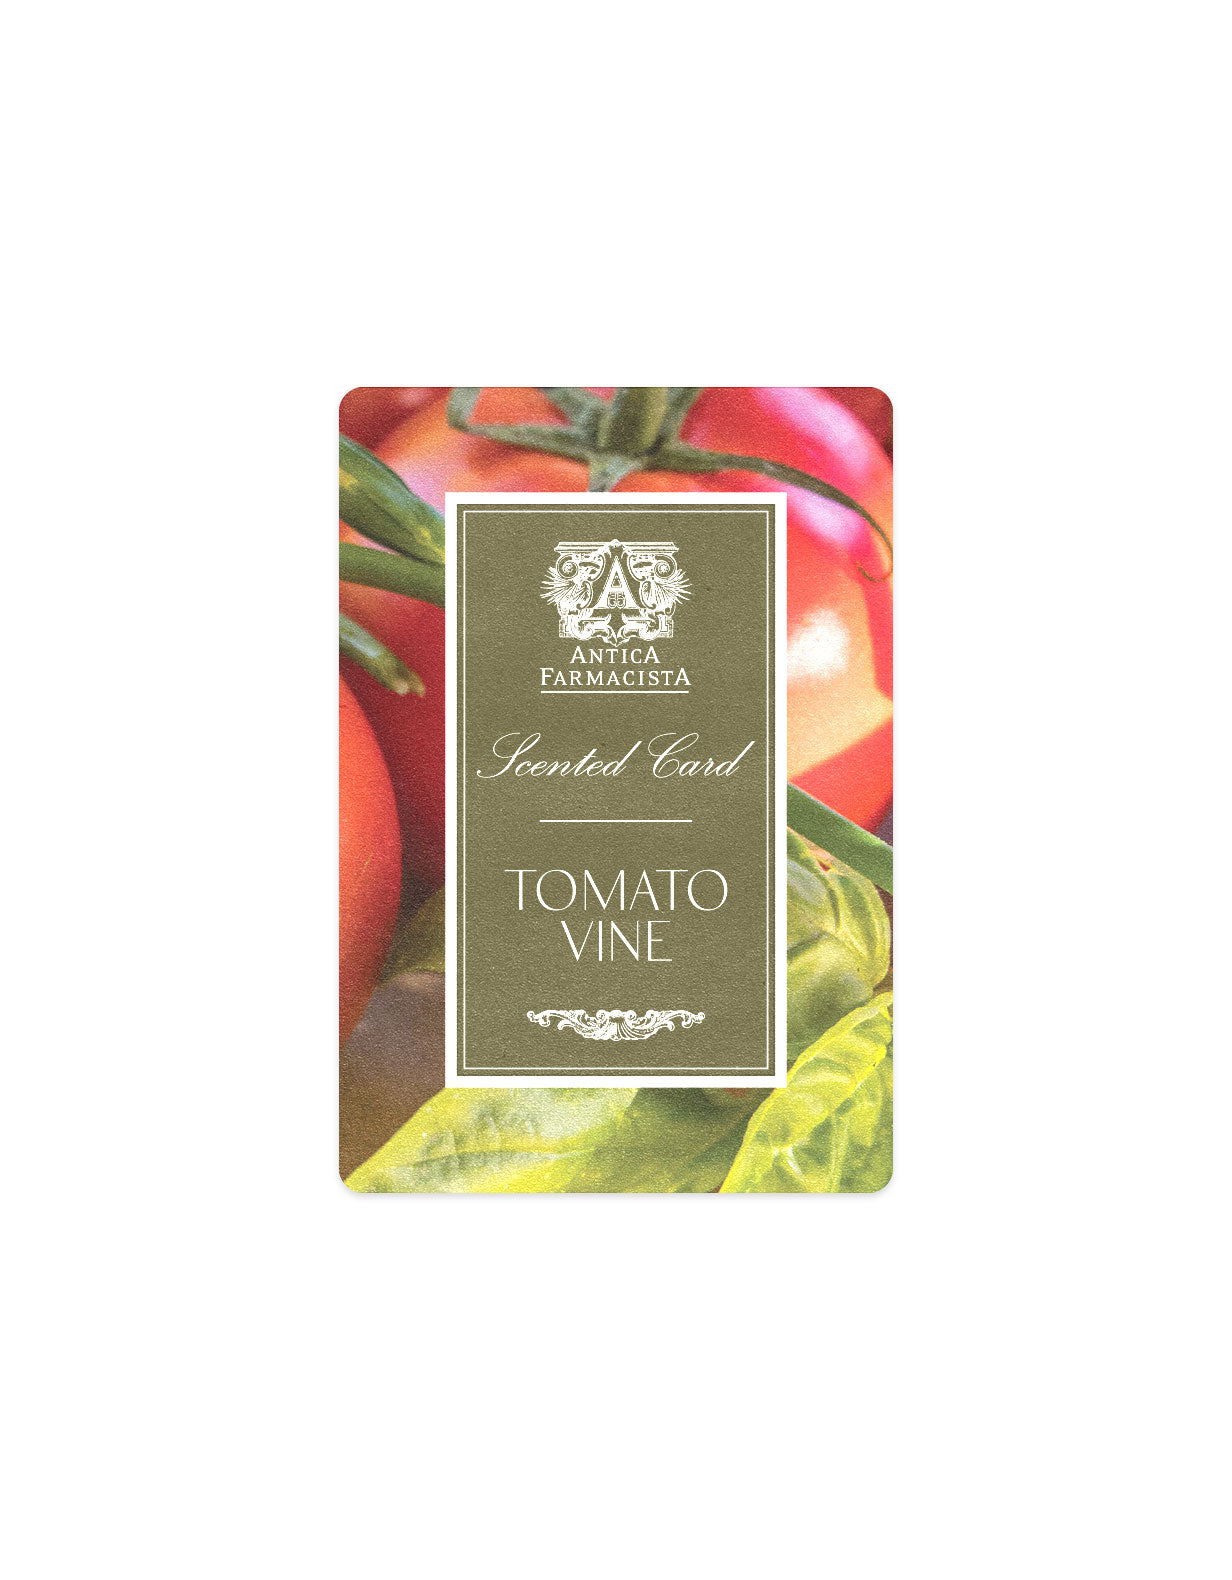 Scented Card - Tomato Vine